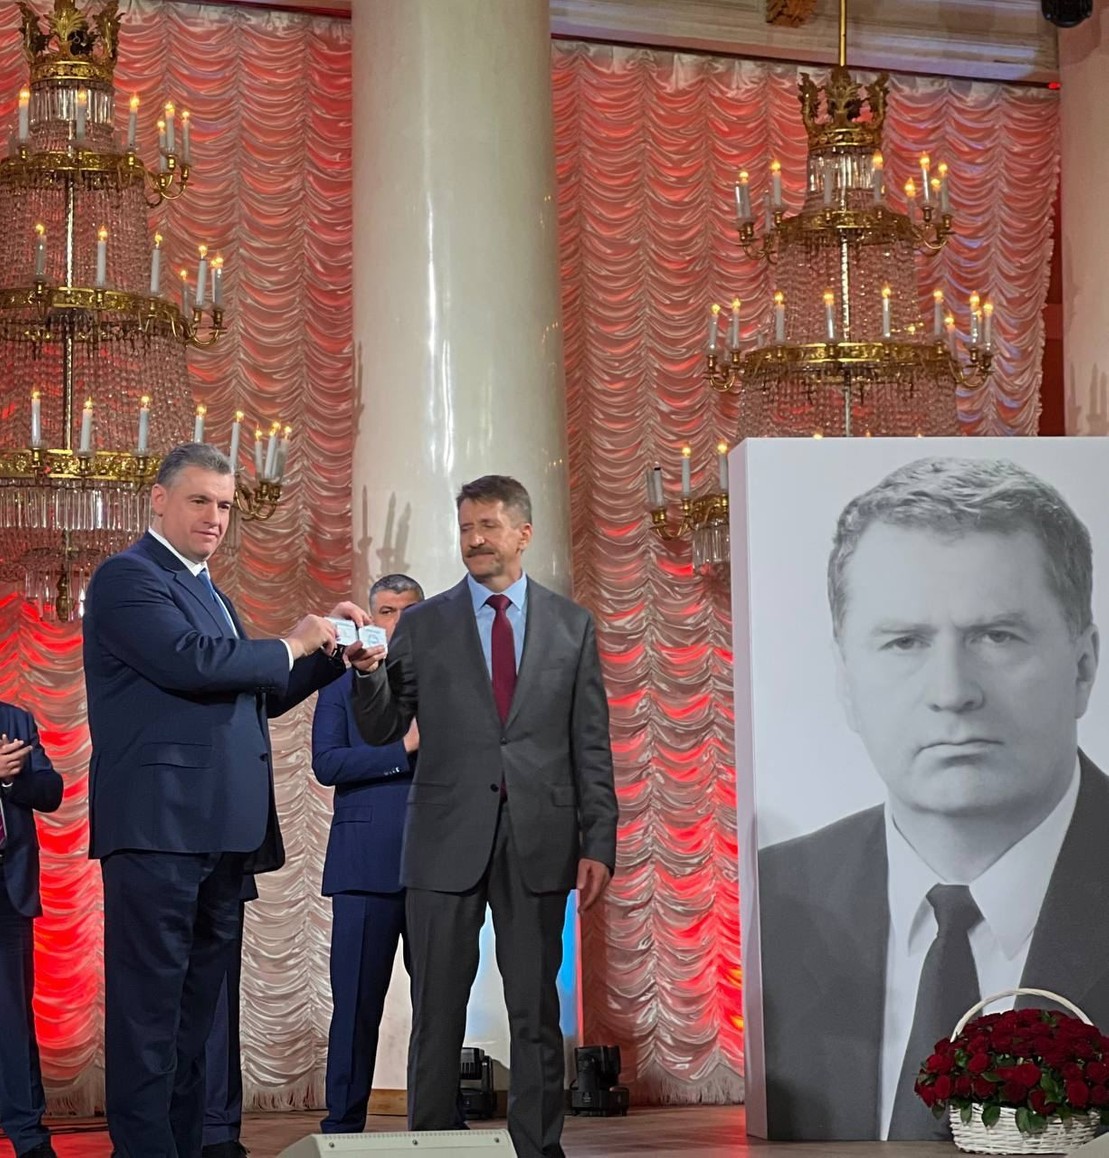 Виктор Бут вступил в ЛДПР и поблагодарил Слуцкого и Жириновского «за помощь в вызволении из заточения»